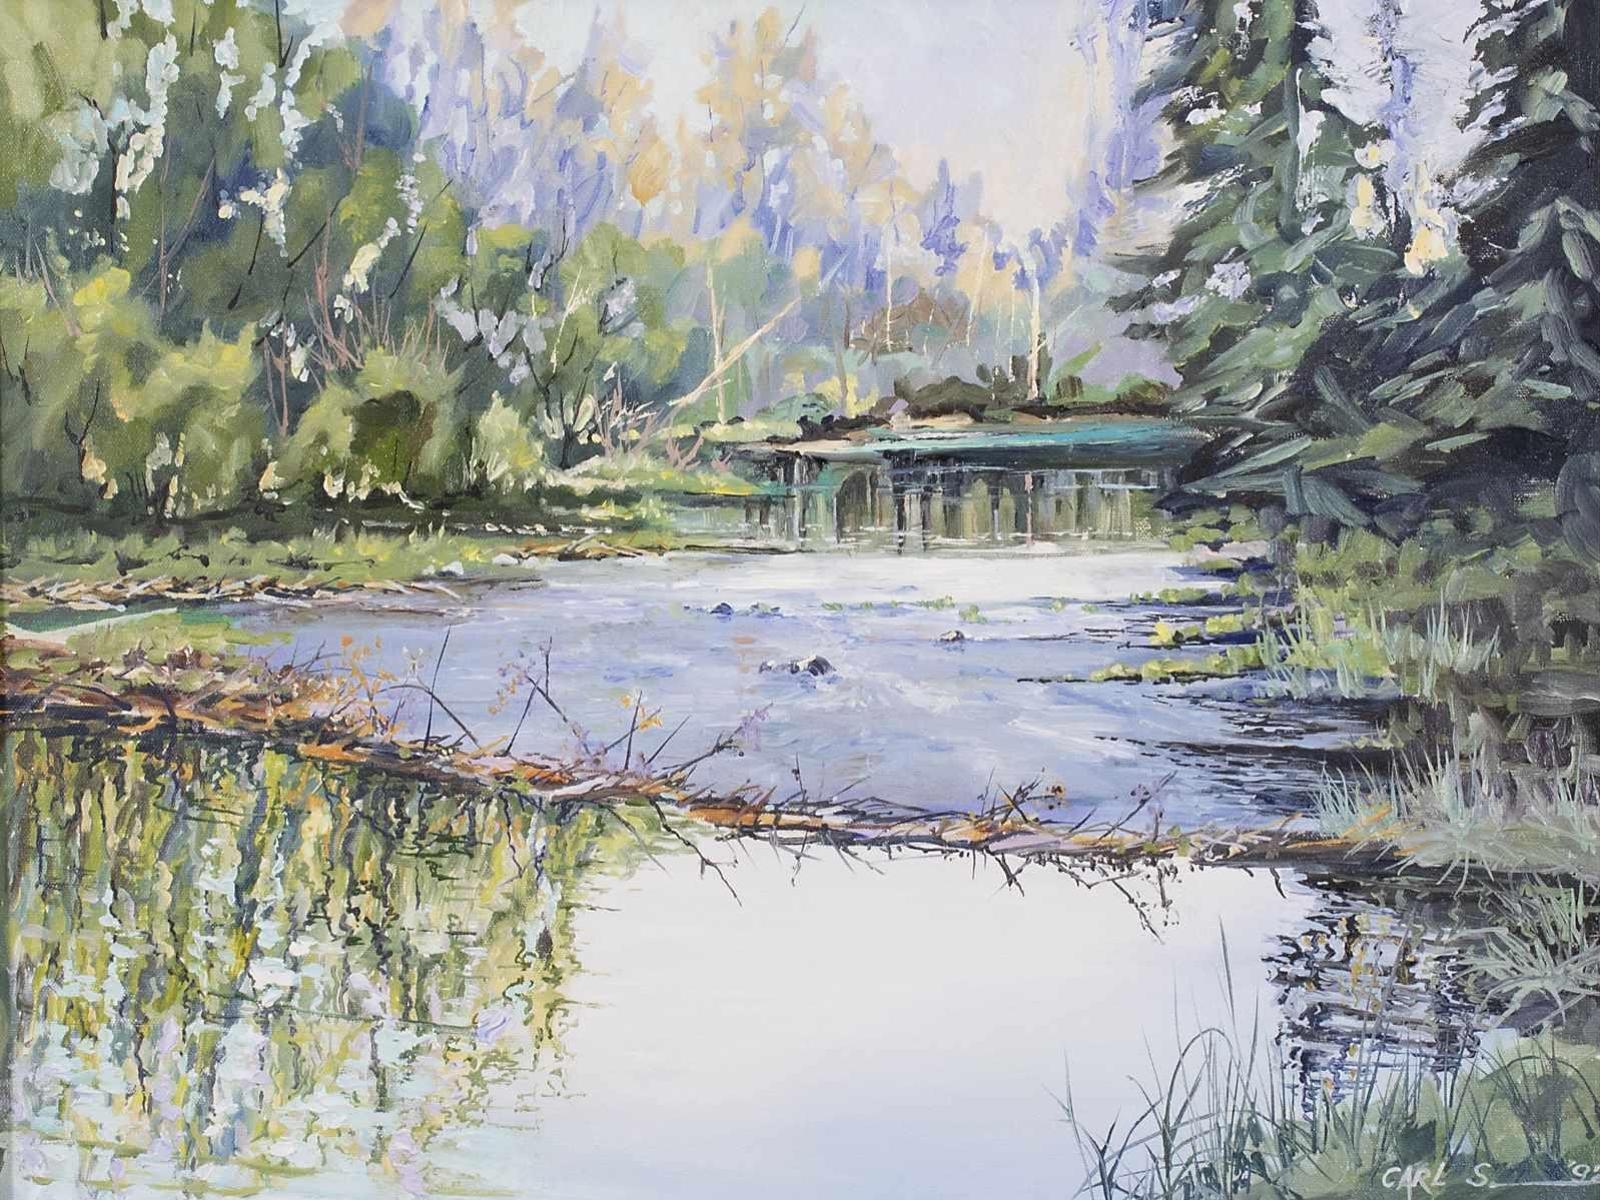 Carl Schlademan (1940) - Peaceful Pond; 1992